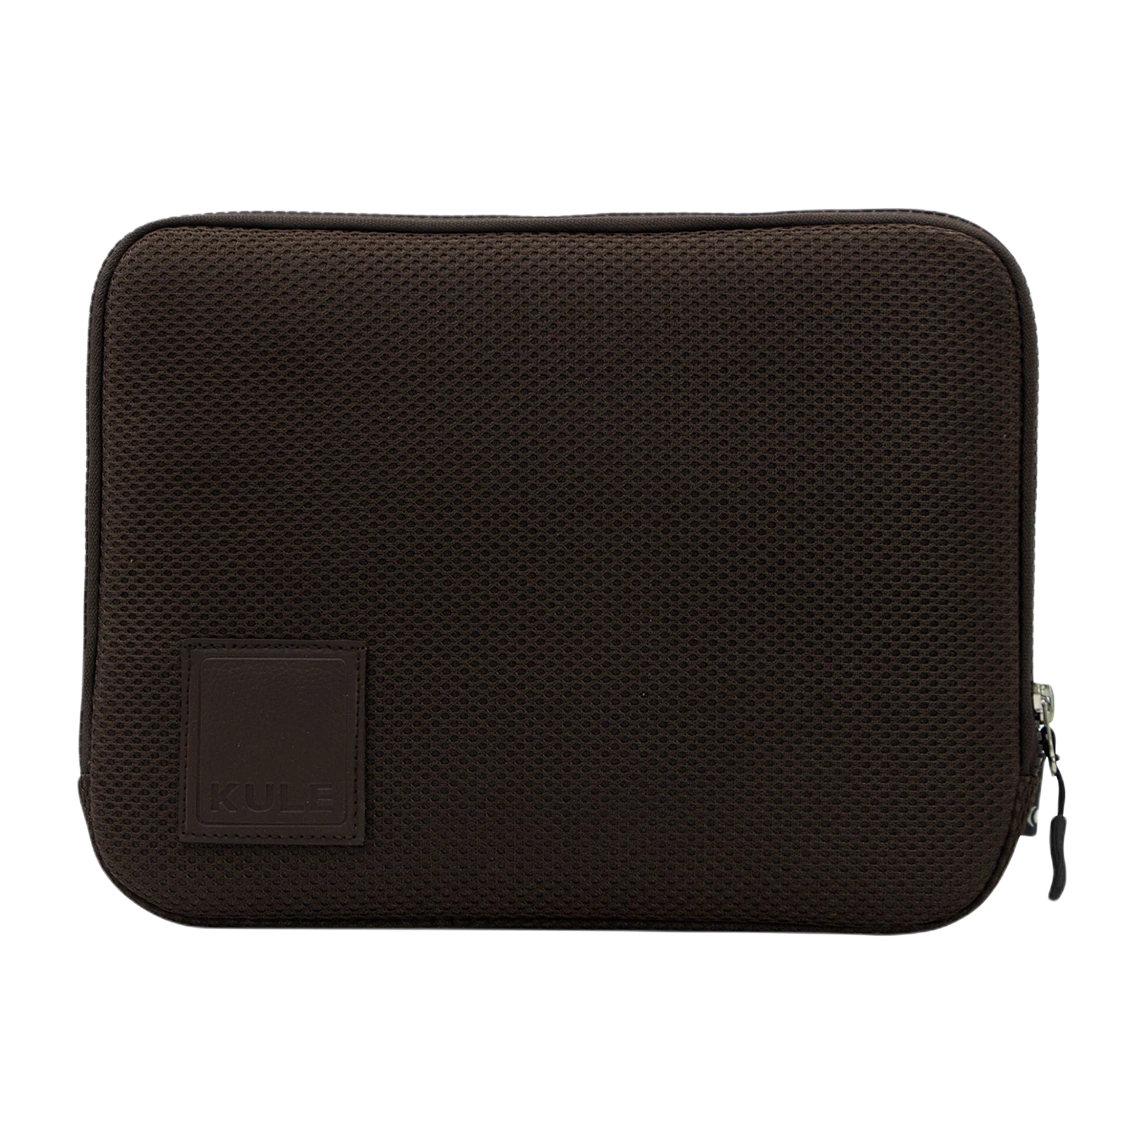 کیف لپ تاپ 15 اینچ کوله مدل KL1550